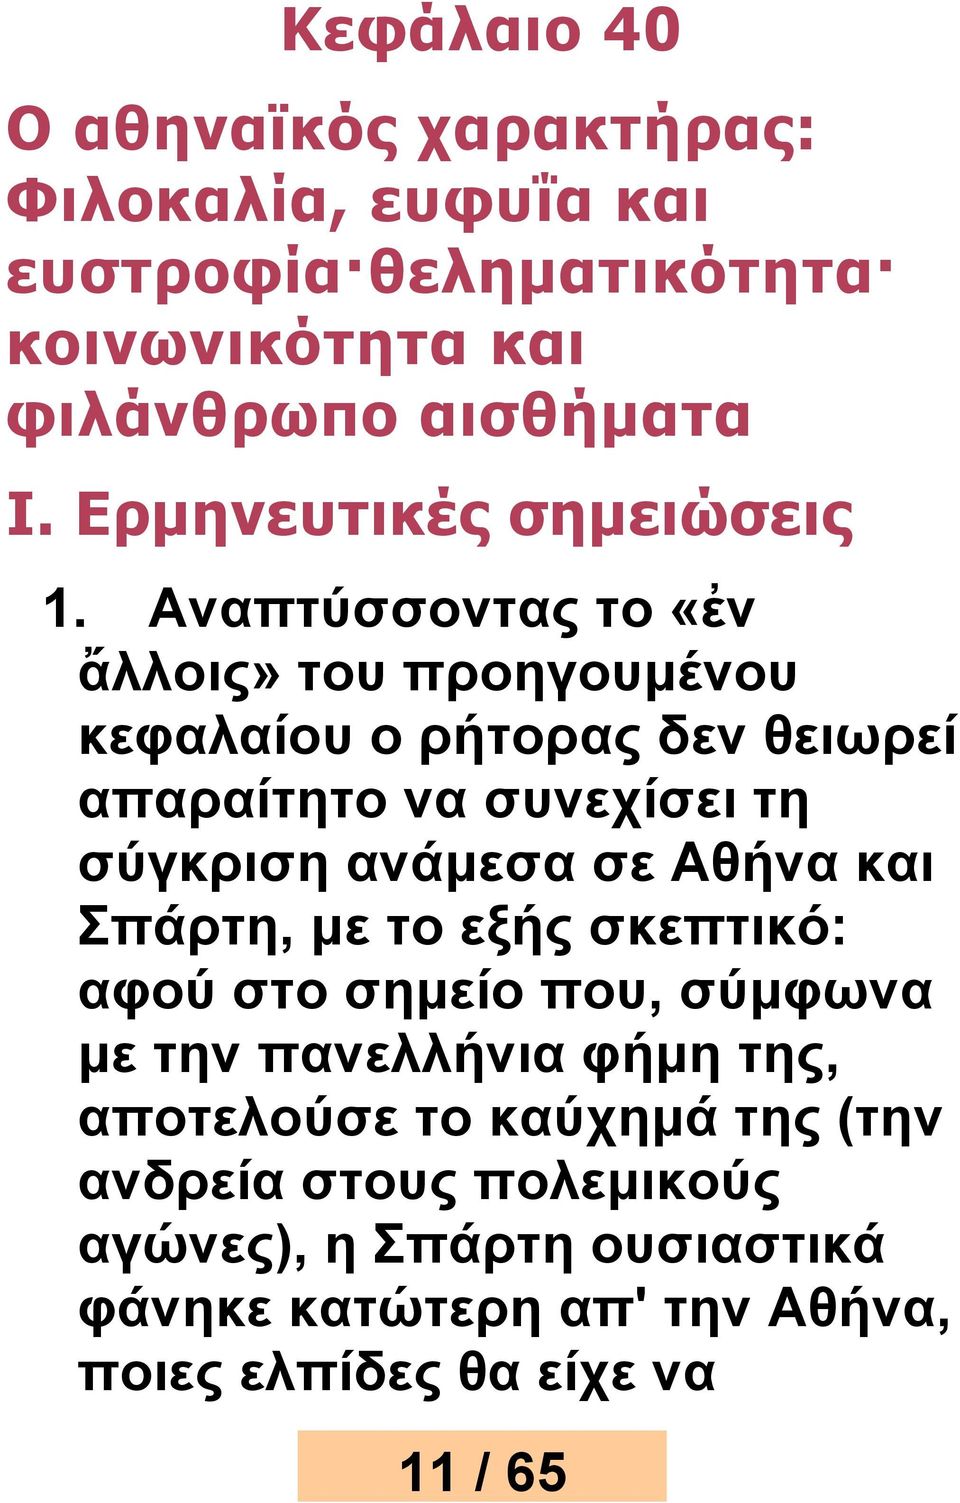 Αναπτύσσοντας το «ἐν ἄλλοις» του προηγουμένου κεφαλαίου ο ρήτορας δεν θειωρεί απαραίτητο να συνεχίσει τη σύγκριση ανάμεσα σε Αθήνα